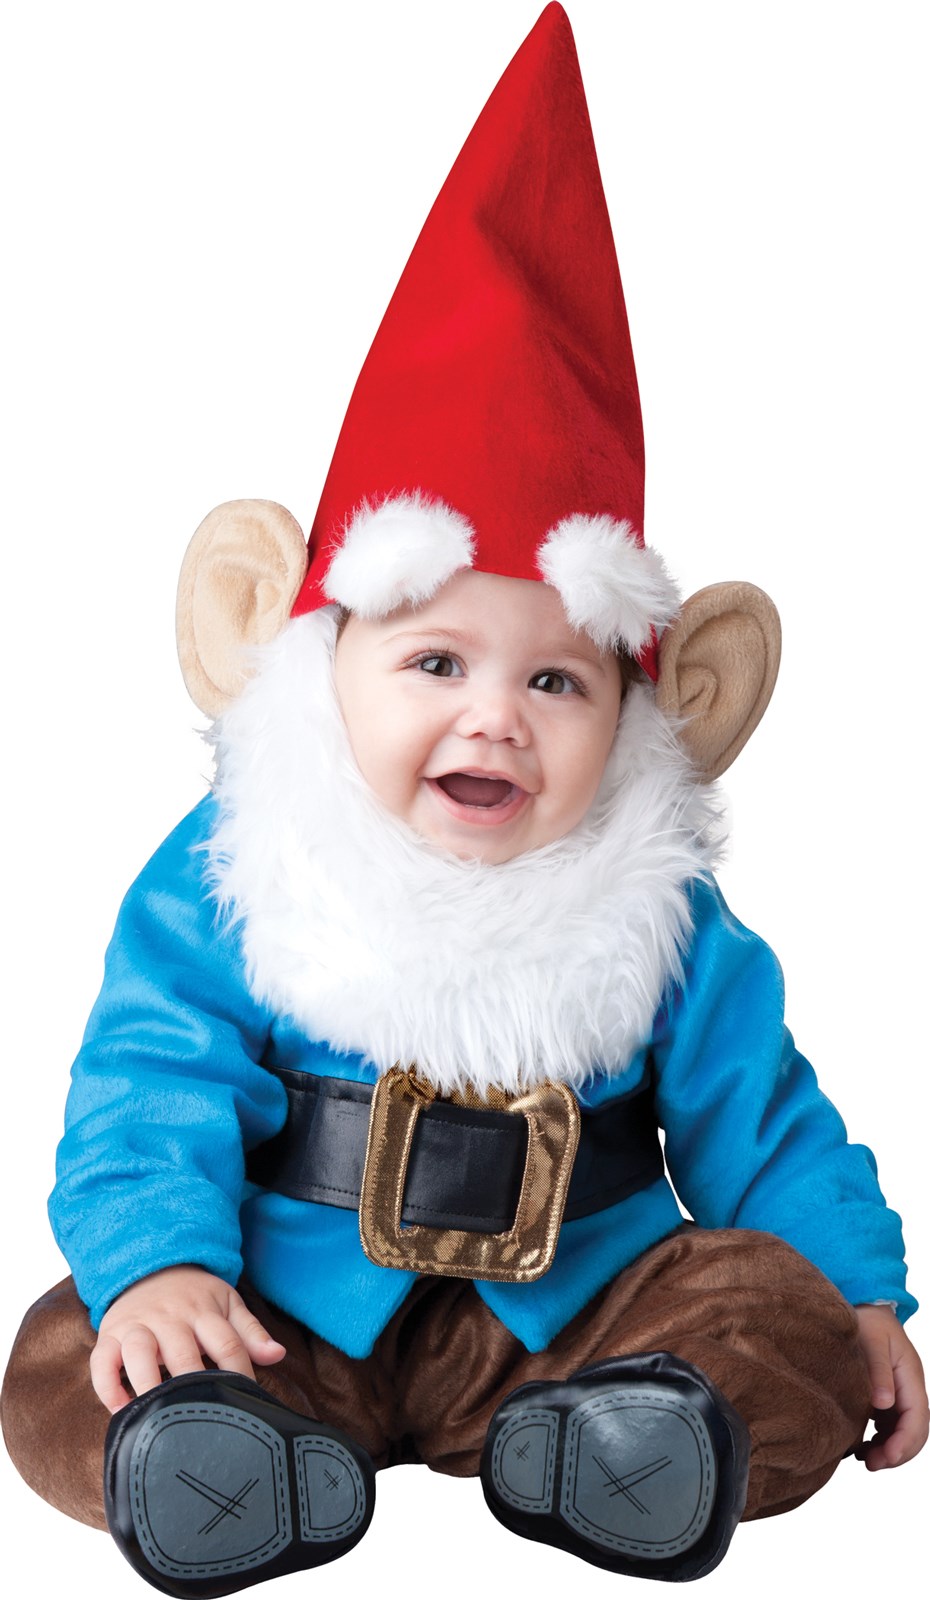 Little Garden Gnome Infant / Toddler Costume